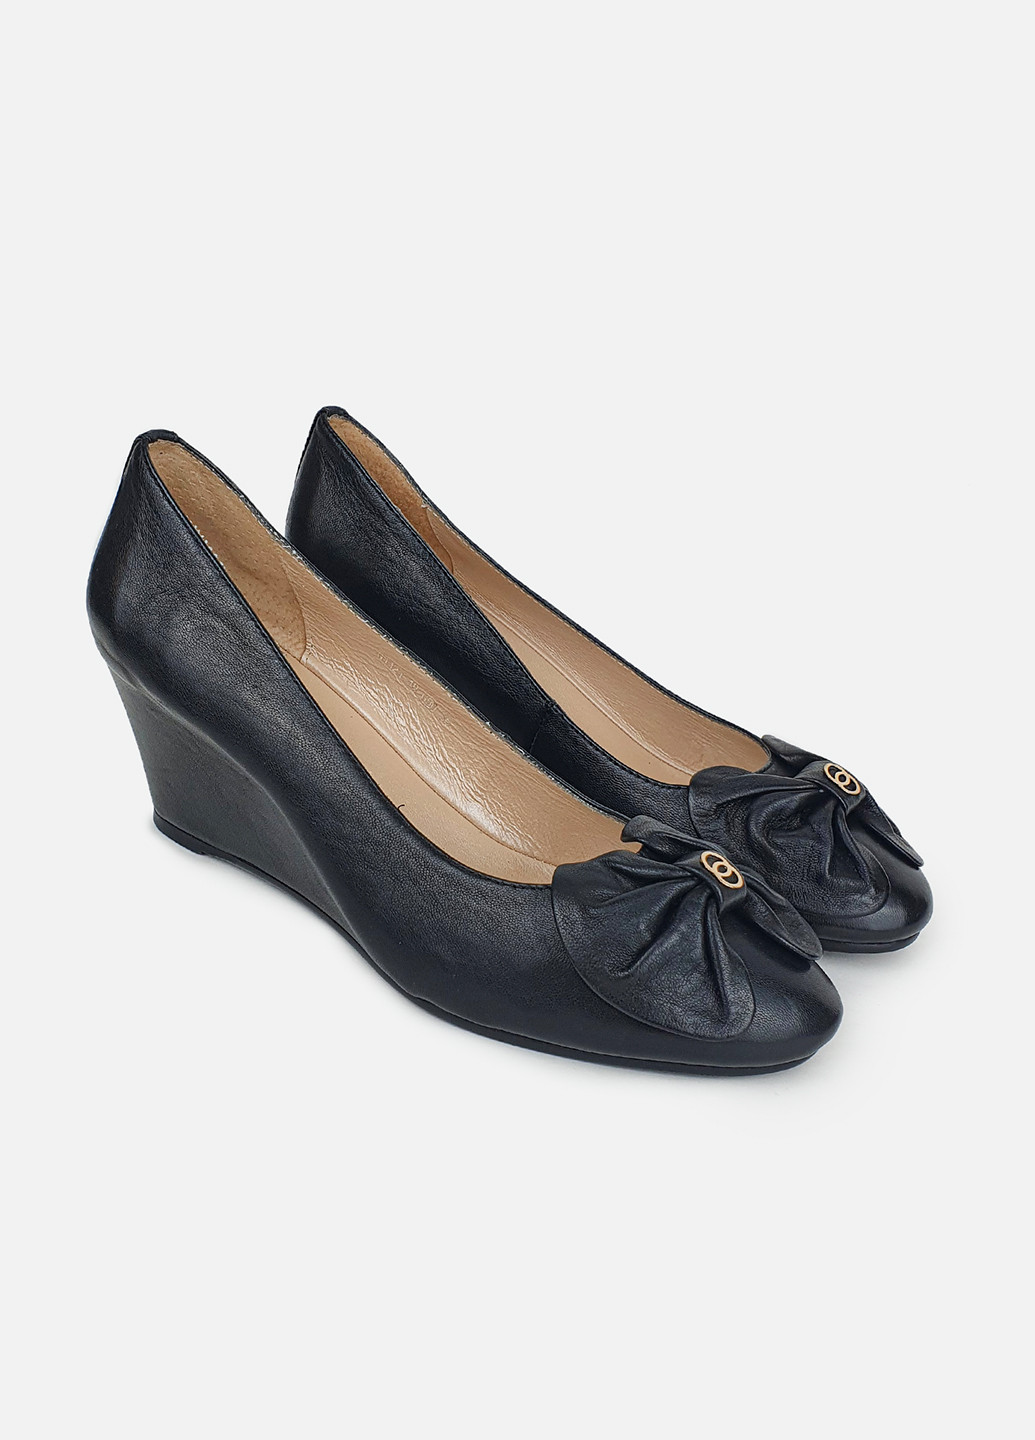 Жіночі туфлі на танкетці шкіряні чорні Glossi туфли (252654862)